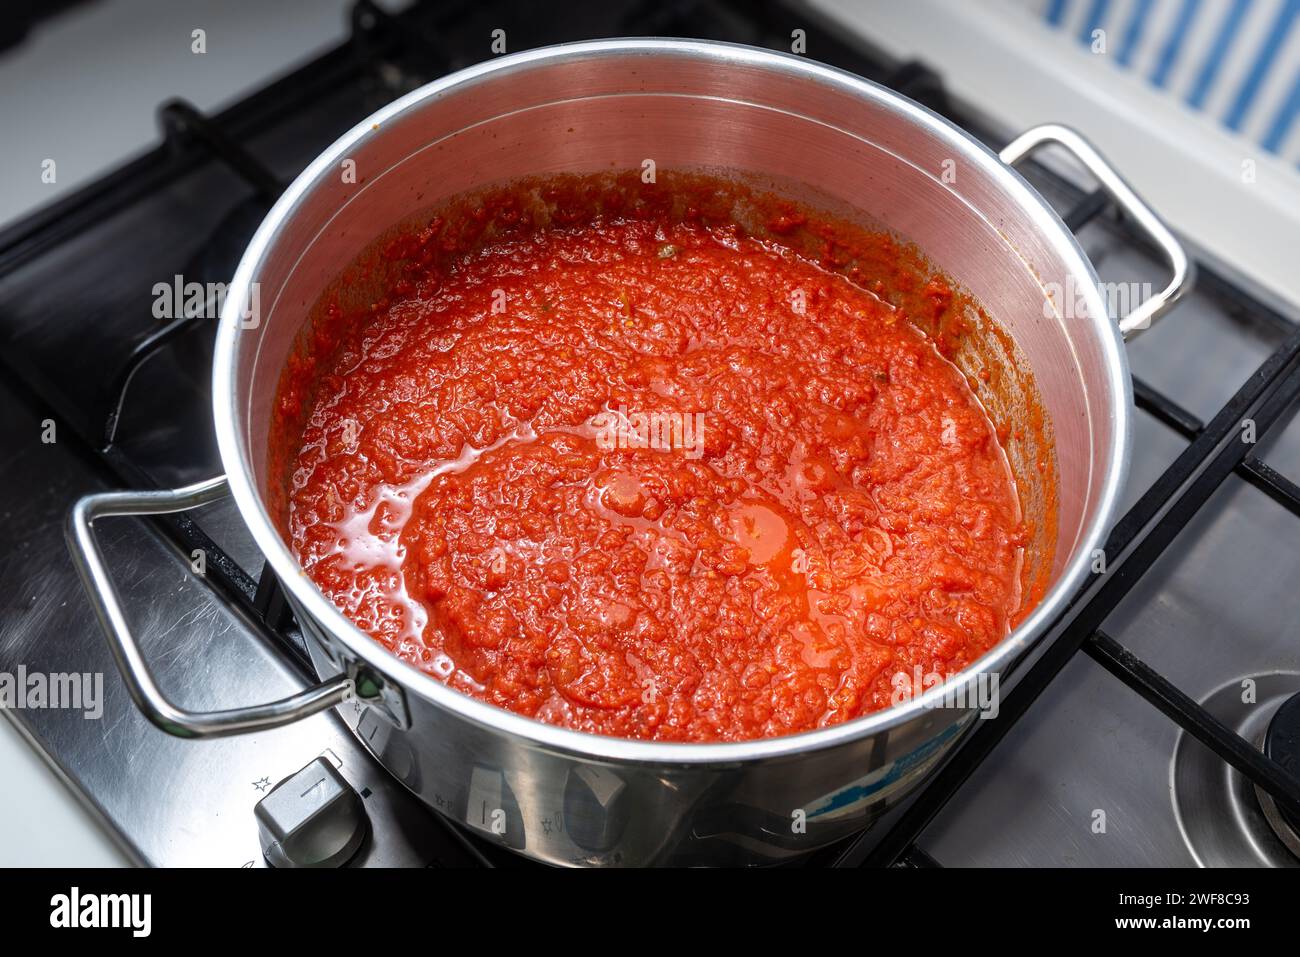 Roter Tomatensoße nach neapolitanischer Art wird in einem Topf auf einem Kochfeld gekocht, Blick von oben. Tomaten-Ragout-Fleisch in einem Stahltopf Stockfoto